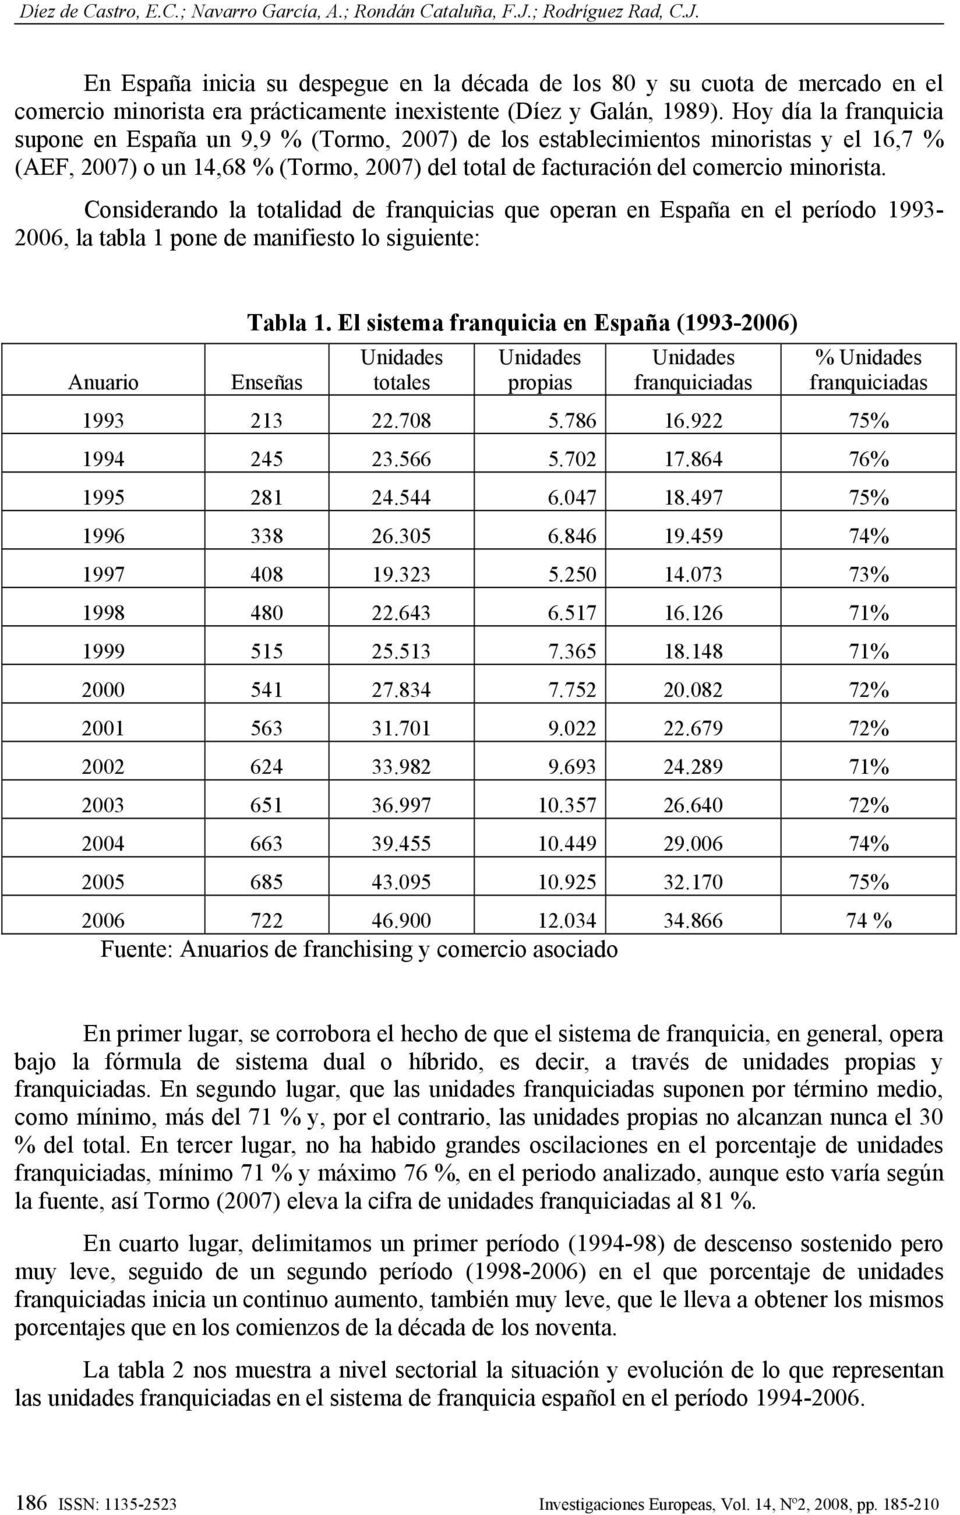 Hoy día la franquicia supone en España un 9,9 % (Tormo, 2007) de los establecimientos minoristas y el 16,7 % (AEF, 2007) o un 14,68 % (Tormo, 2007) del total de facturación del comercio minorista.